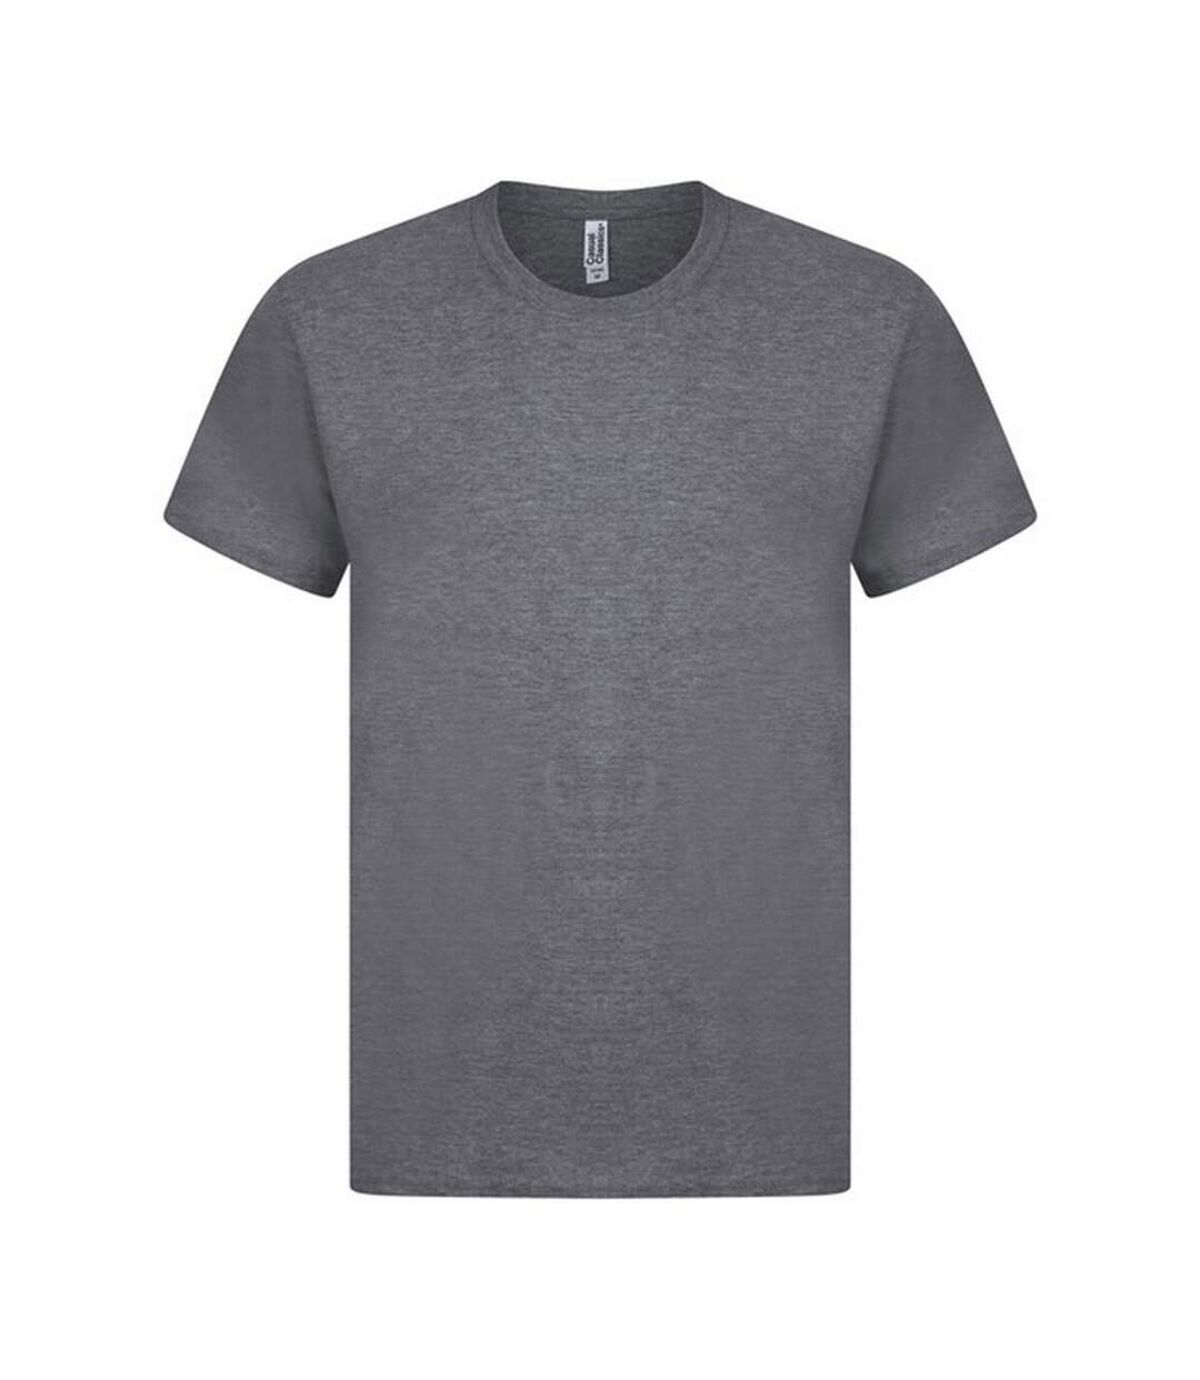 Casual - T-shirt manches courtes - Homme (Charbon de bois) - UTAB261